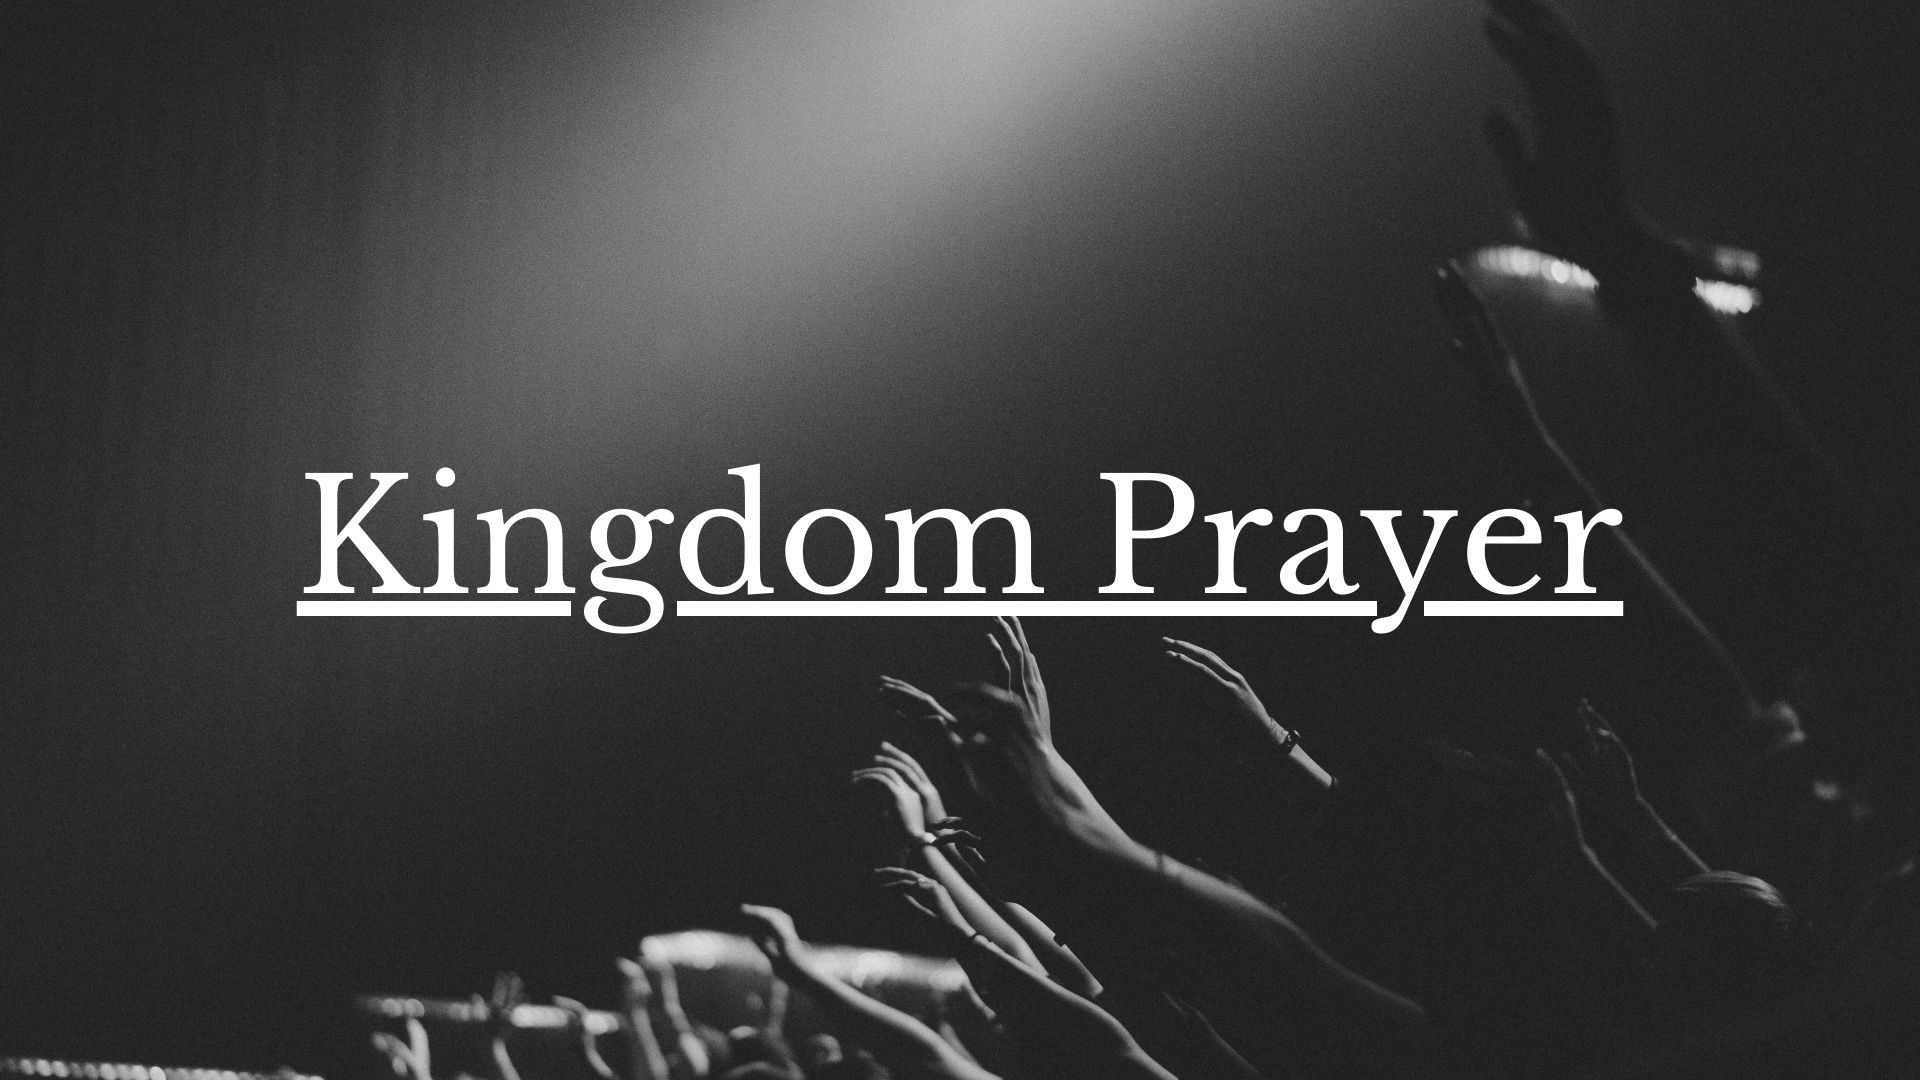 Kingdom Prayer 1920x1080